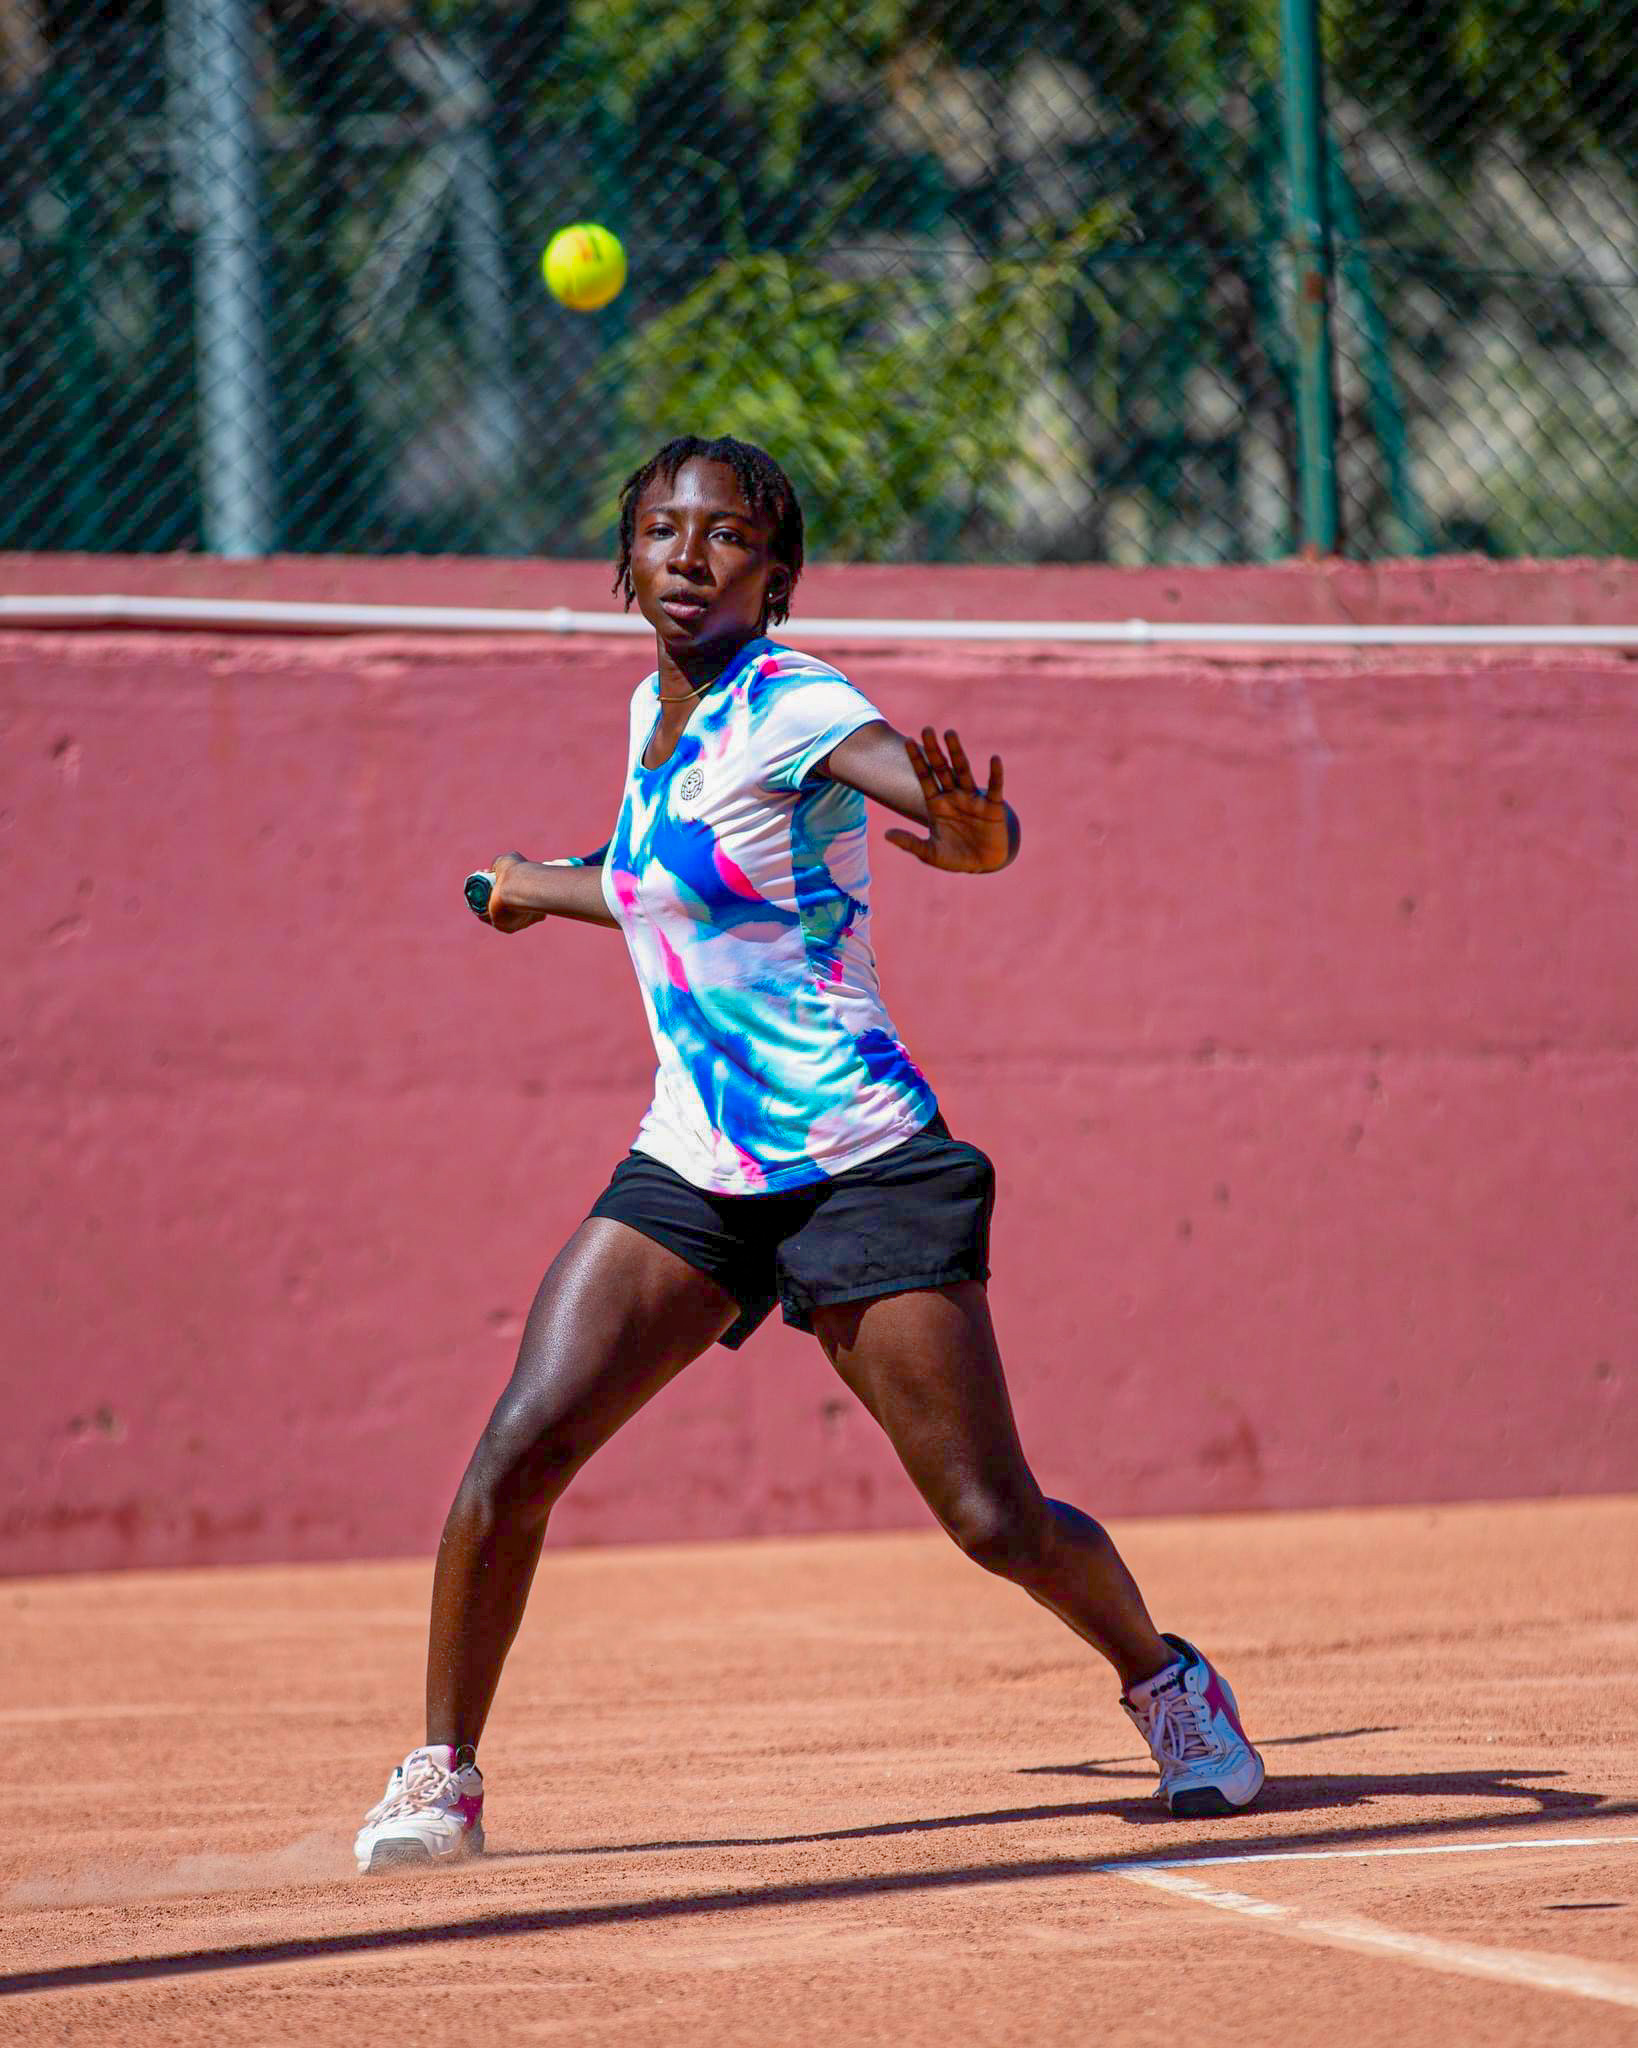 JUST IN! Nigeria’s Ohunene Yakubu Reaches Highest Ever Junior ITF Ranking